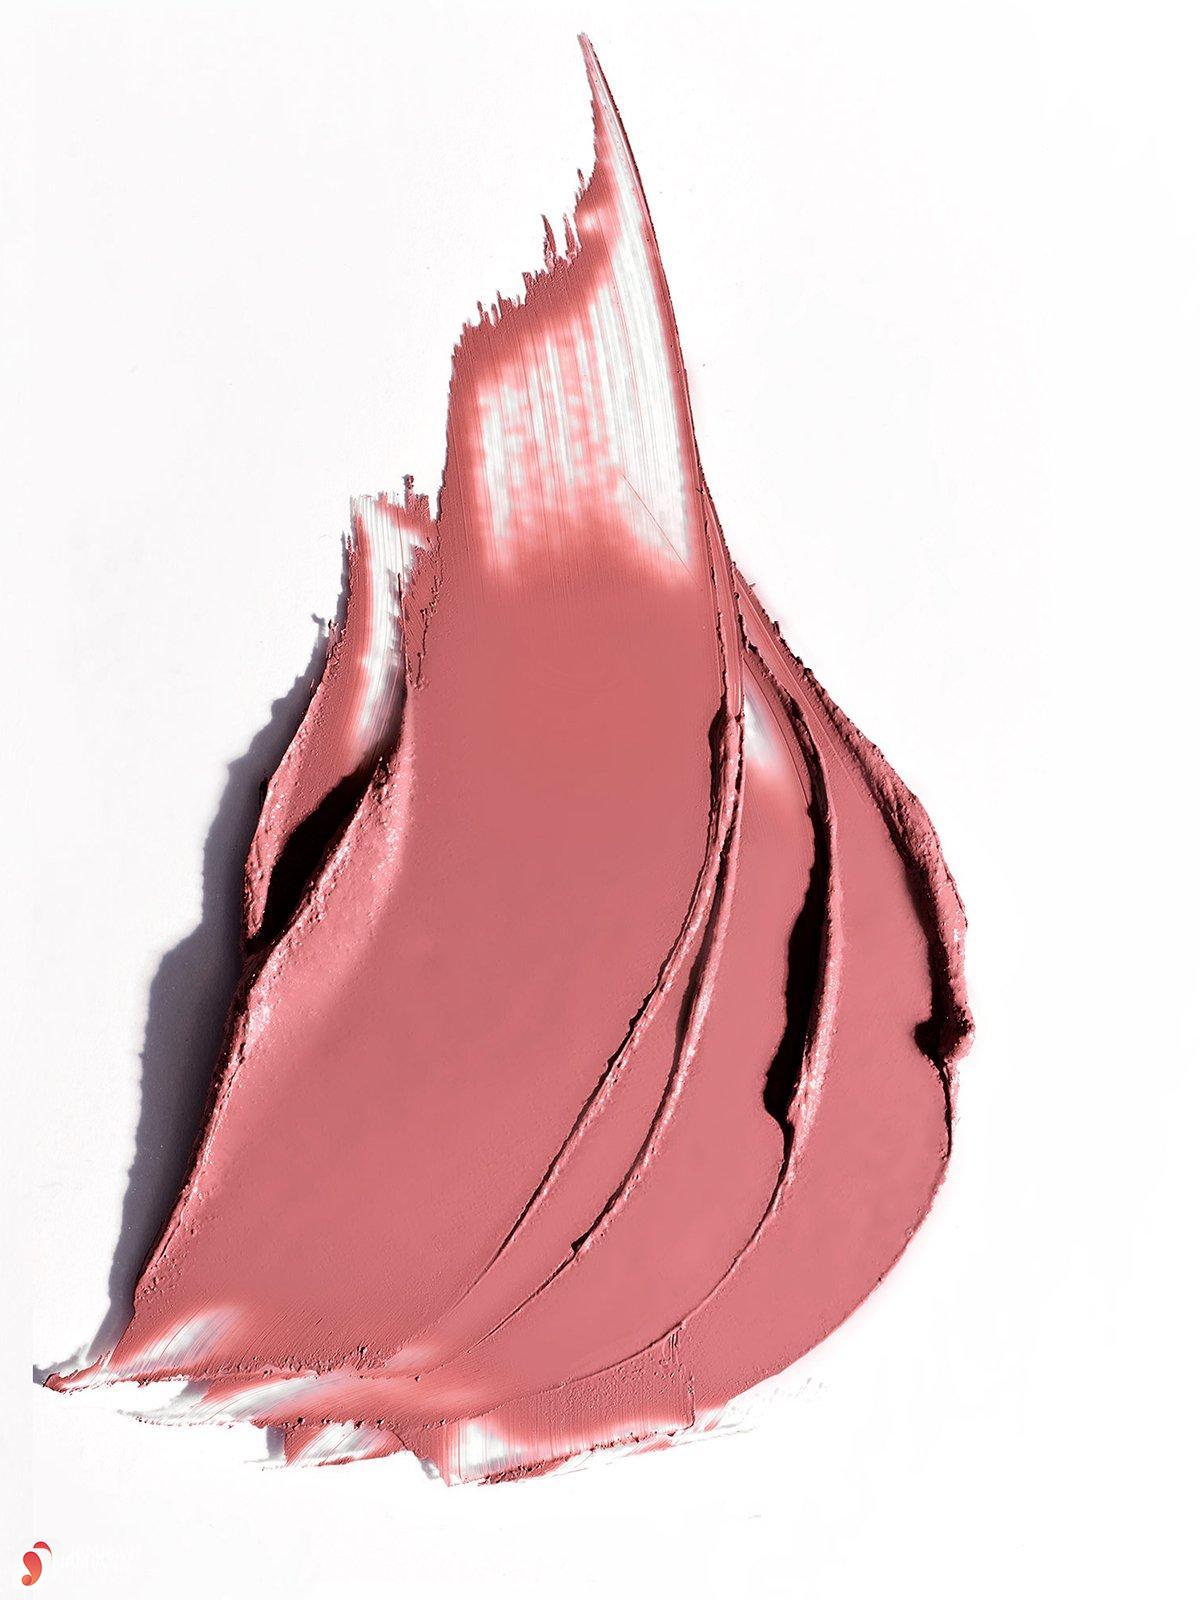 Review son Ilia Color Block High Impact Lipstick 11